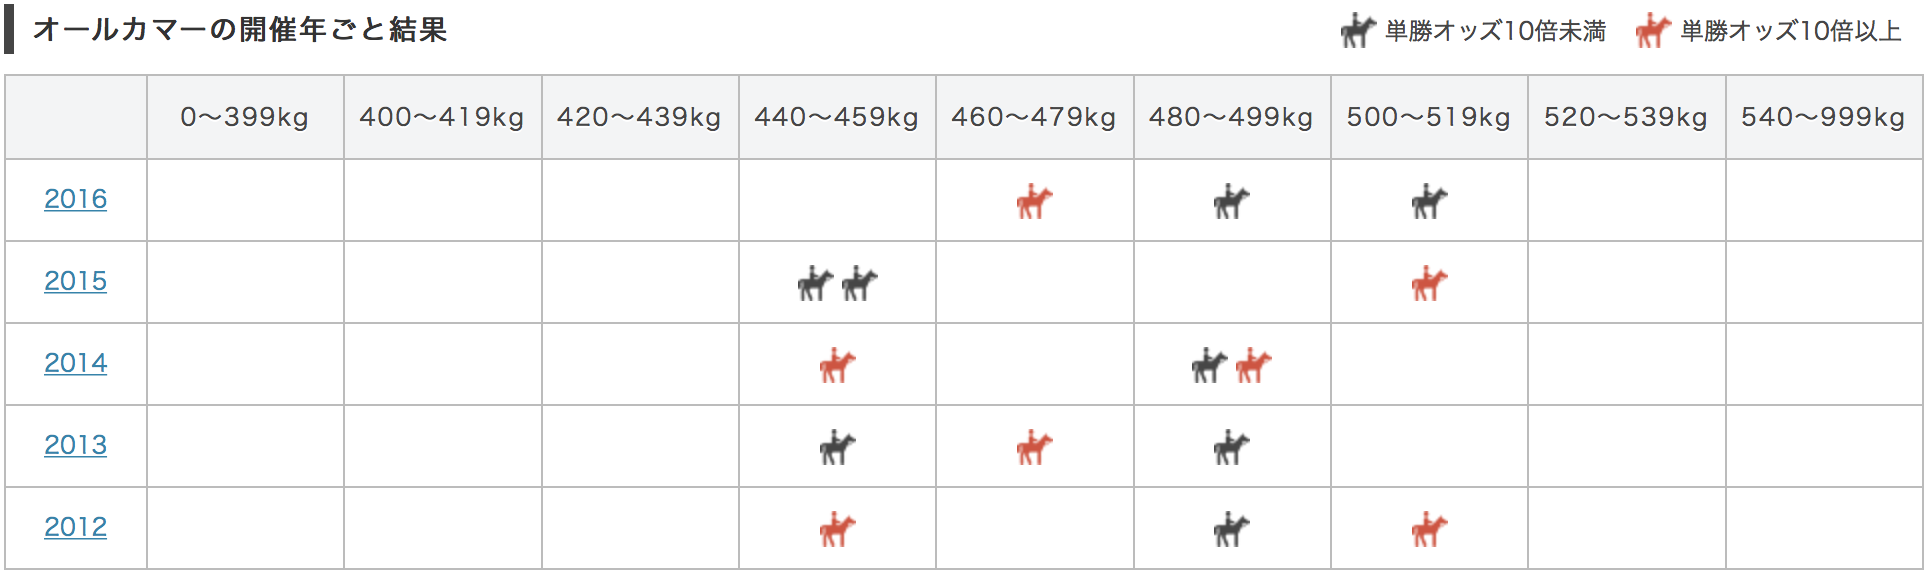 オールカマー2017馬体重別データ